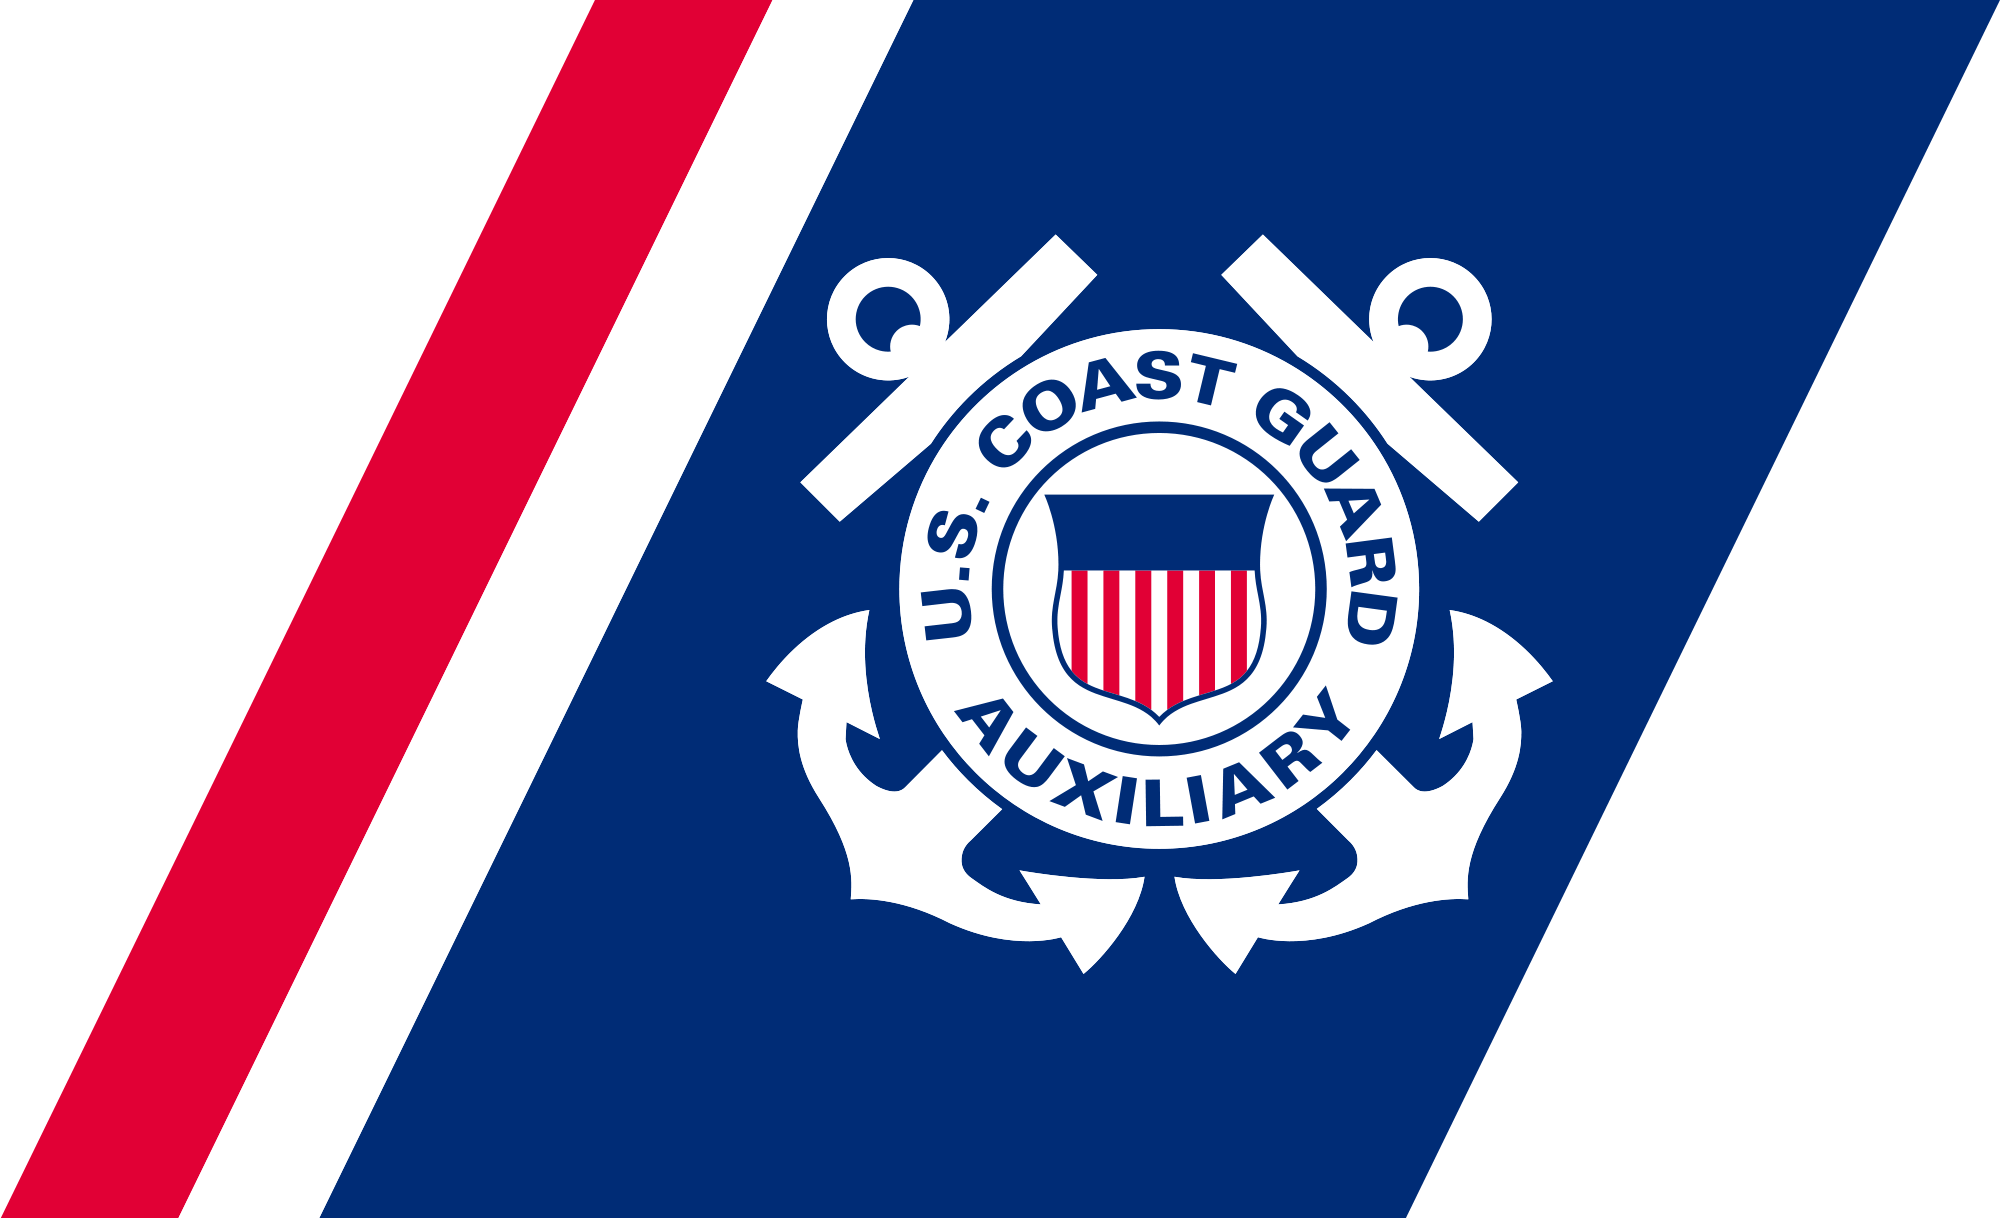 Us Coast Guard Official Logo - File:U.S. Coast Guard Auxiliary Mark.svg - Wikimedia Commons